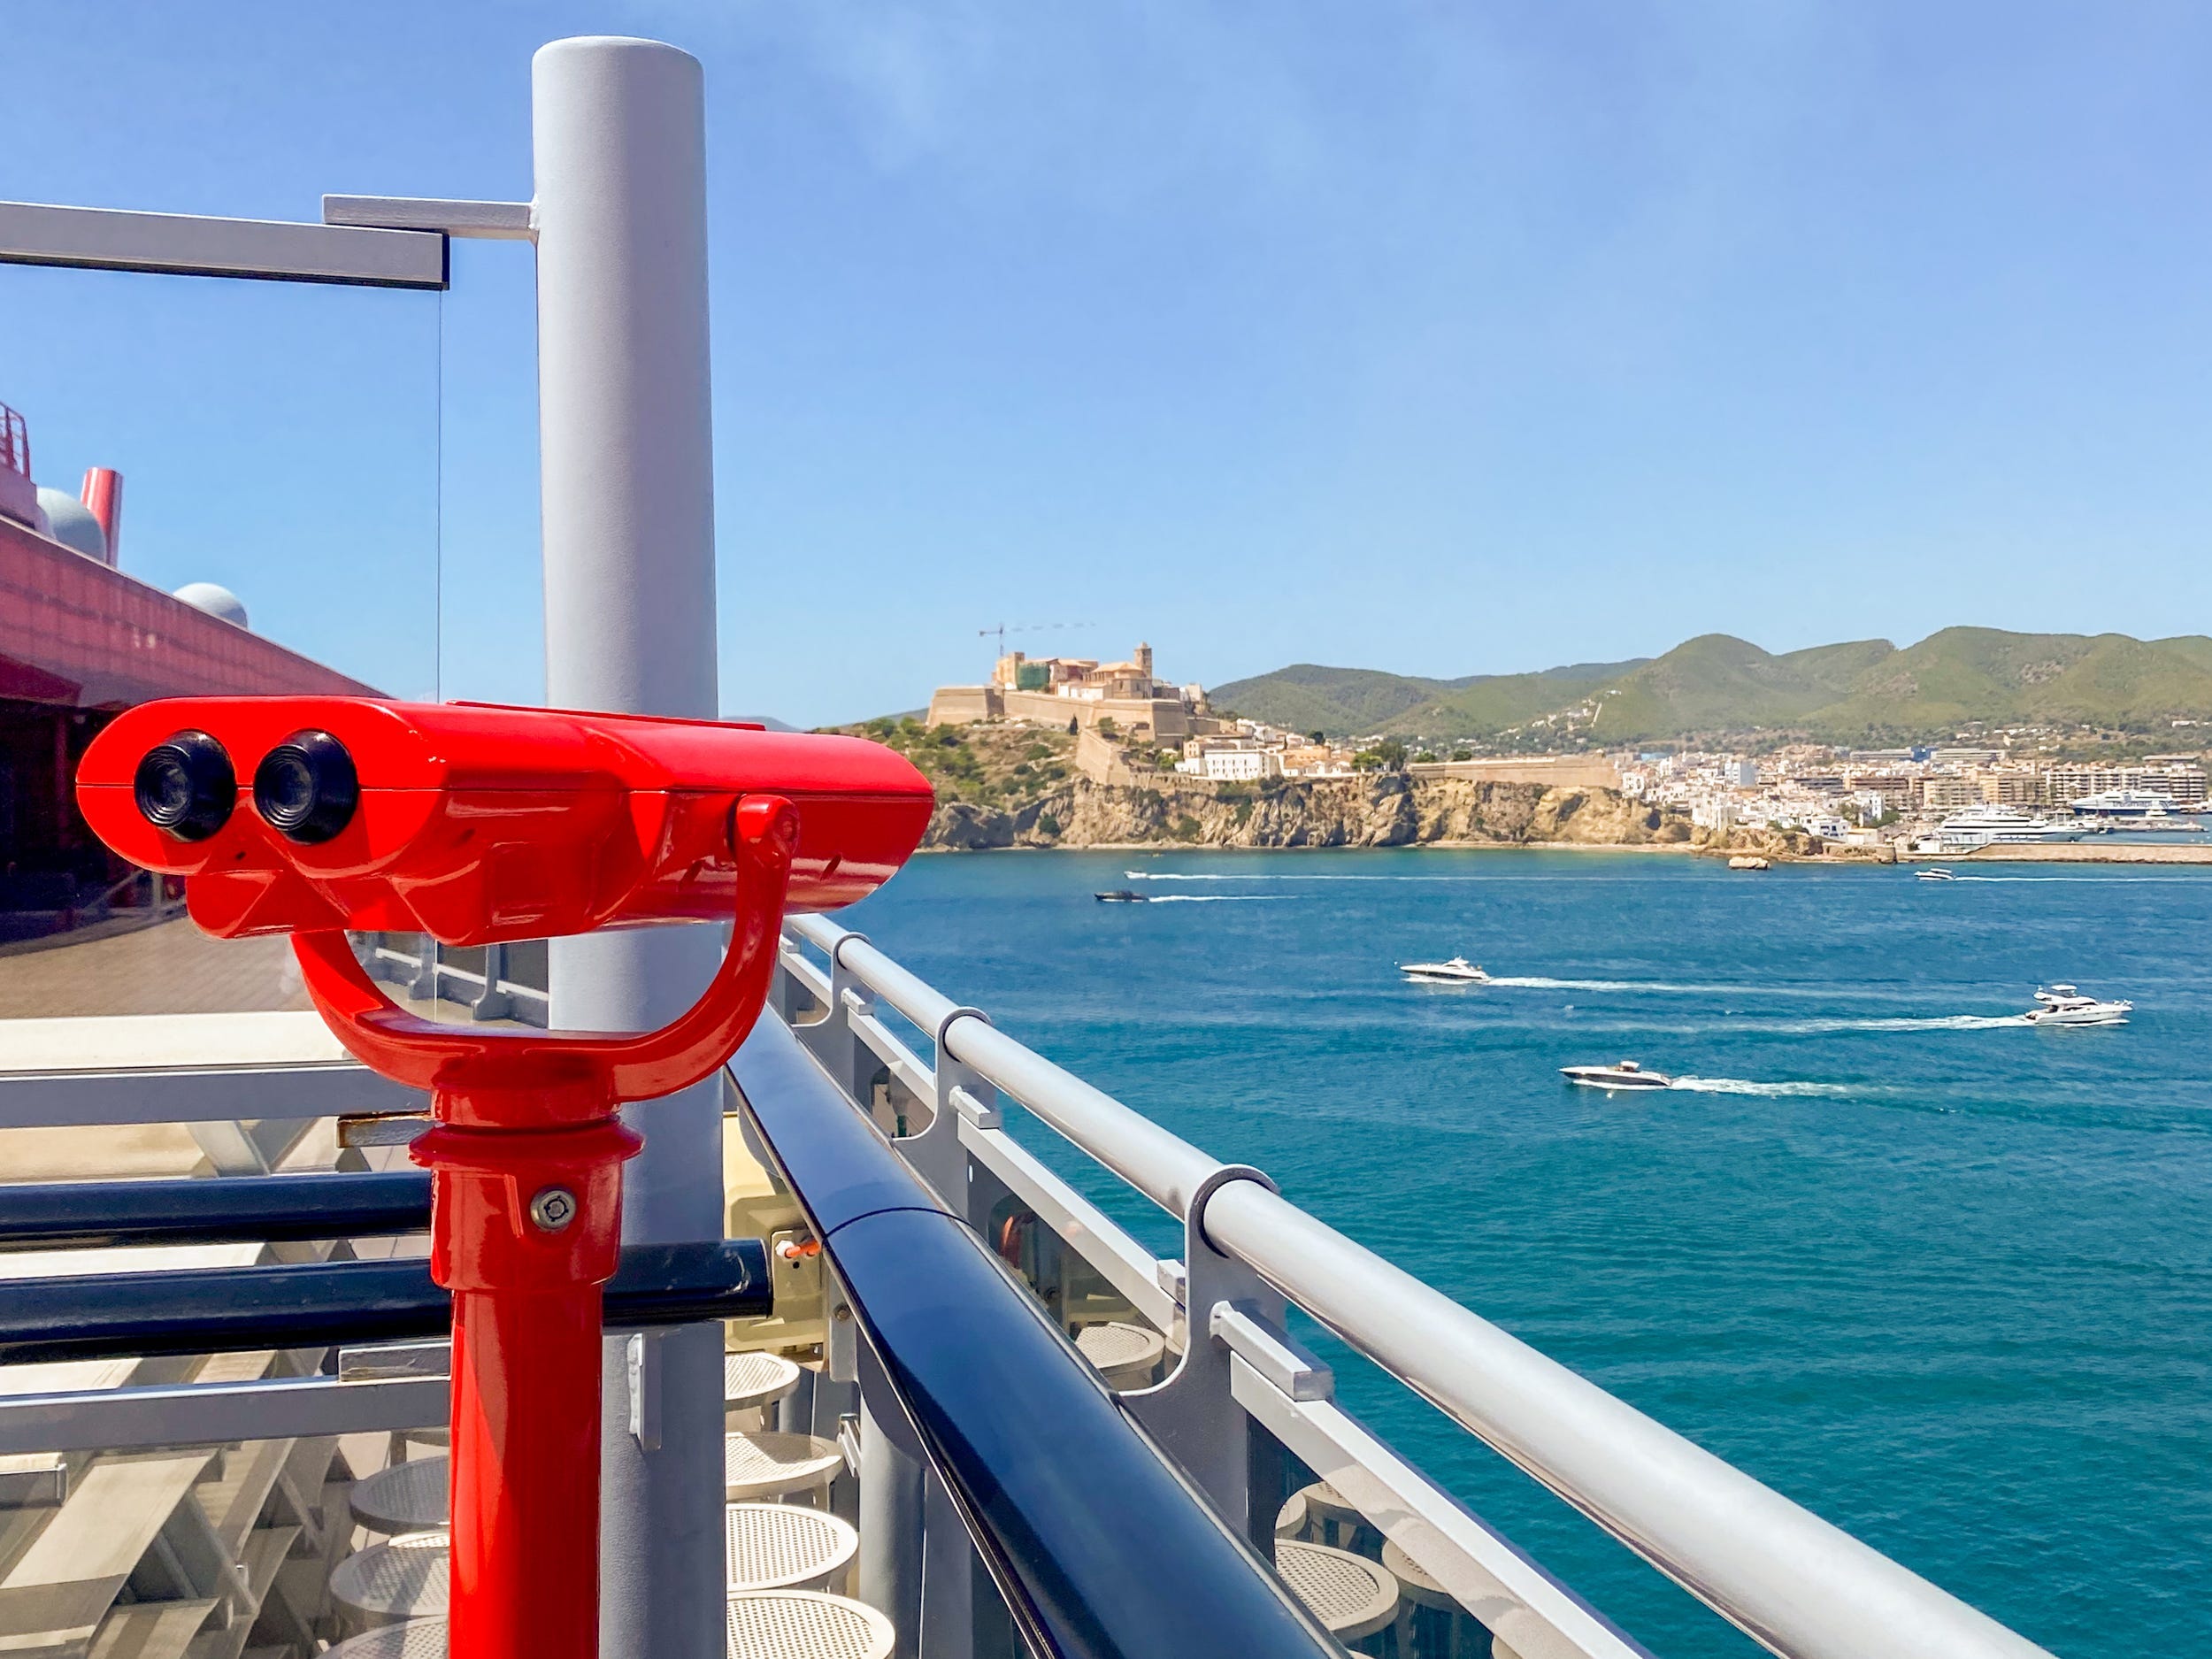 Links ein rotes Teleskop auf dem Oberdeck eines Kreuzfahrtschiffes mit dem Meer und einem fernen Hügel rechts.